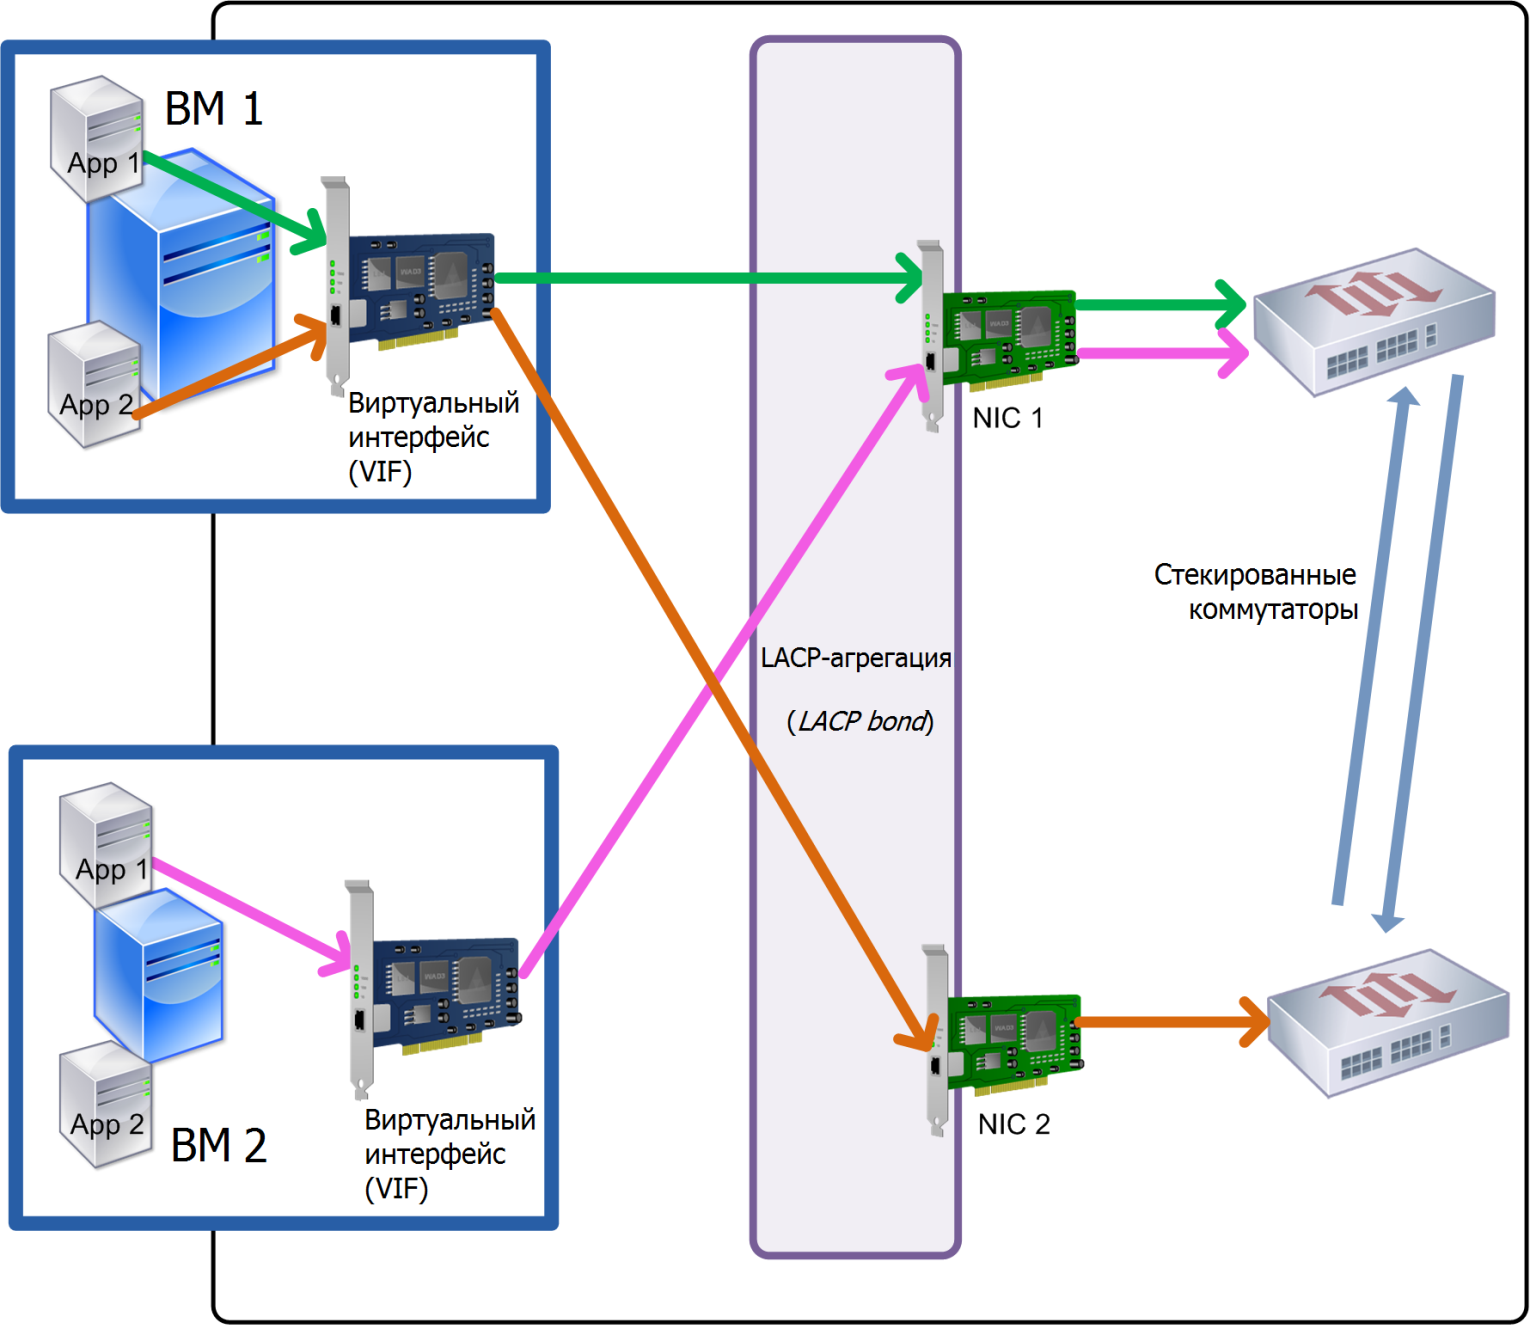 Балансировка нагрузки, основанная на IP-адресе и используемых портах источника и получателя (стек коммутаторов)